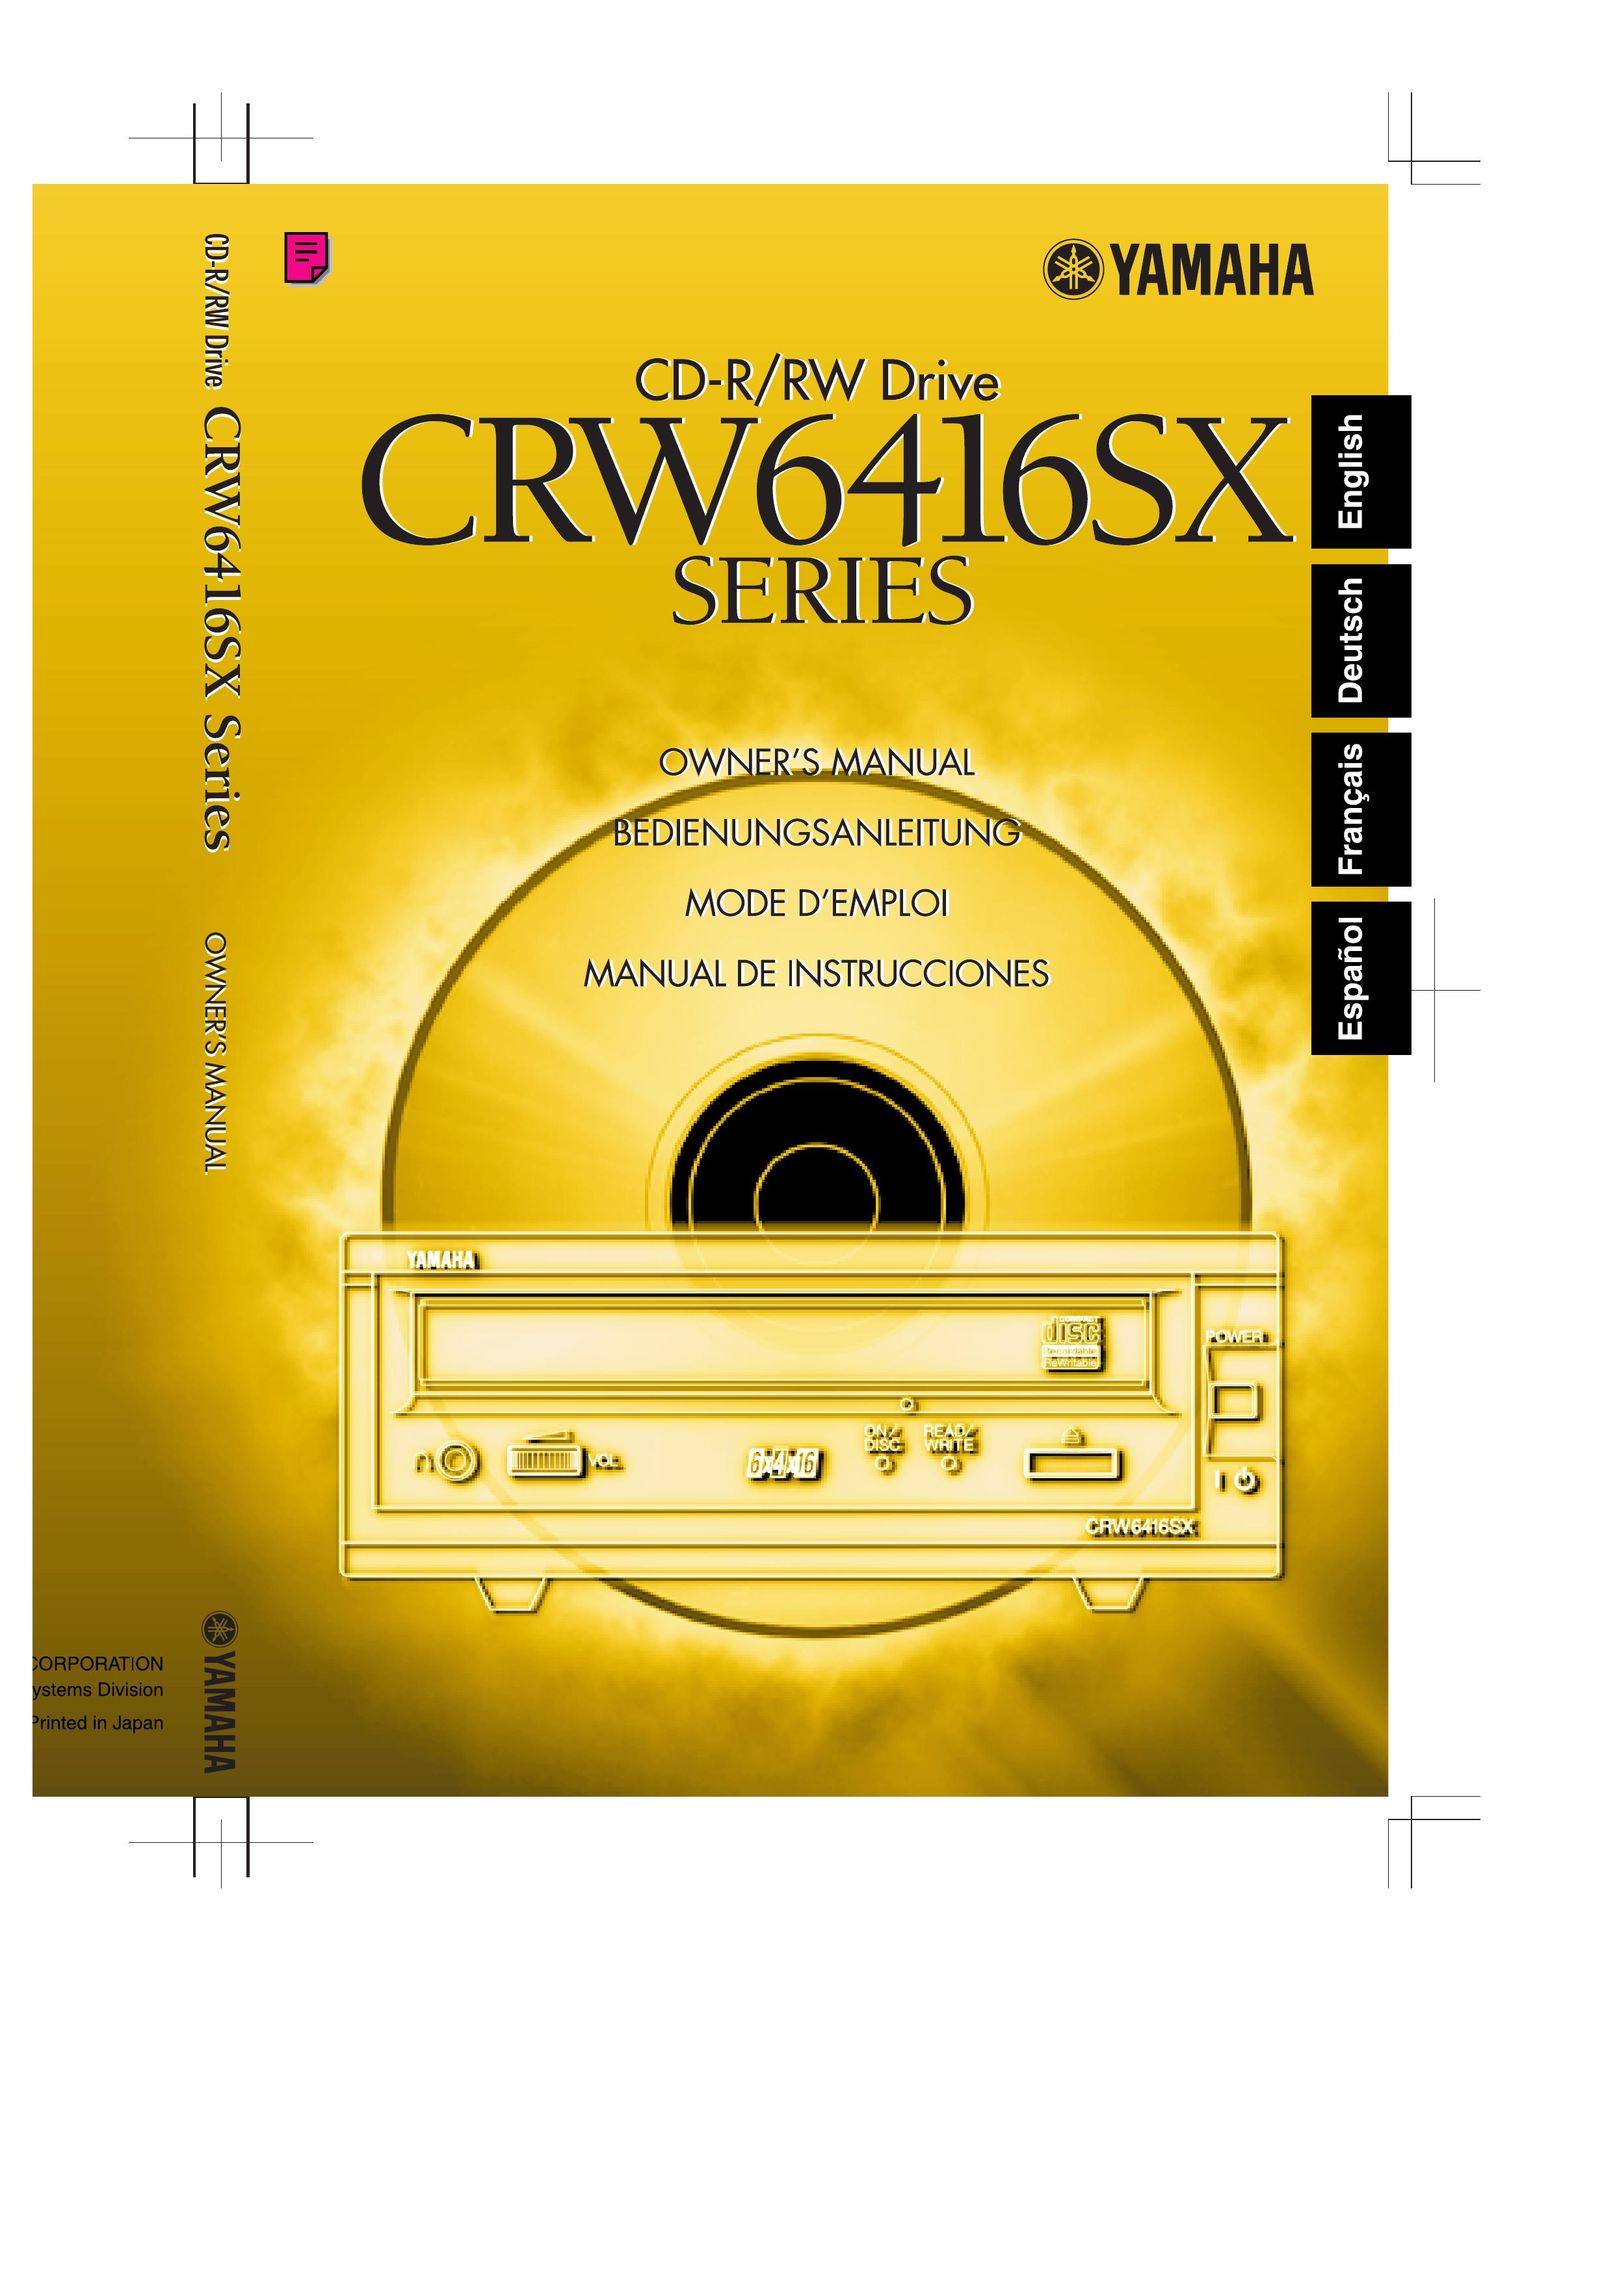 Yamaha CRW6416SX Network Card User Manual